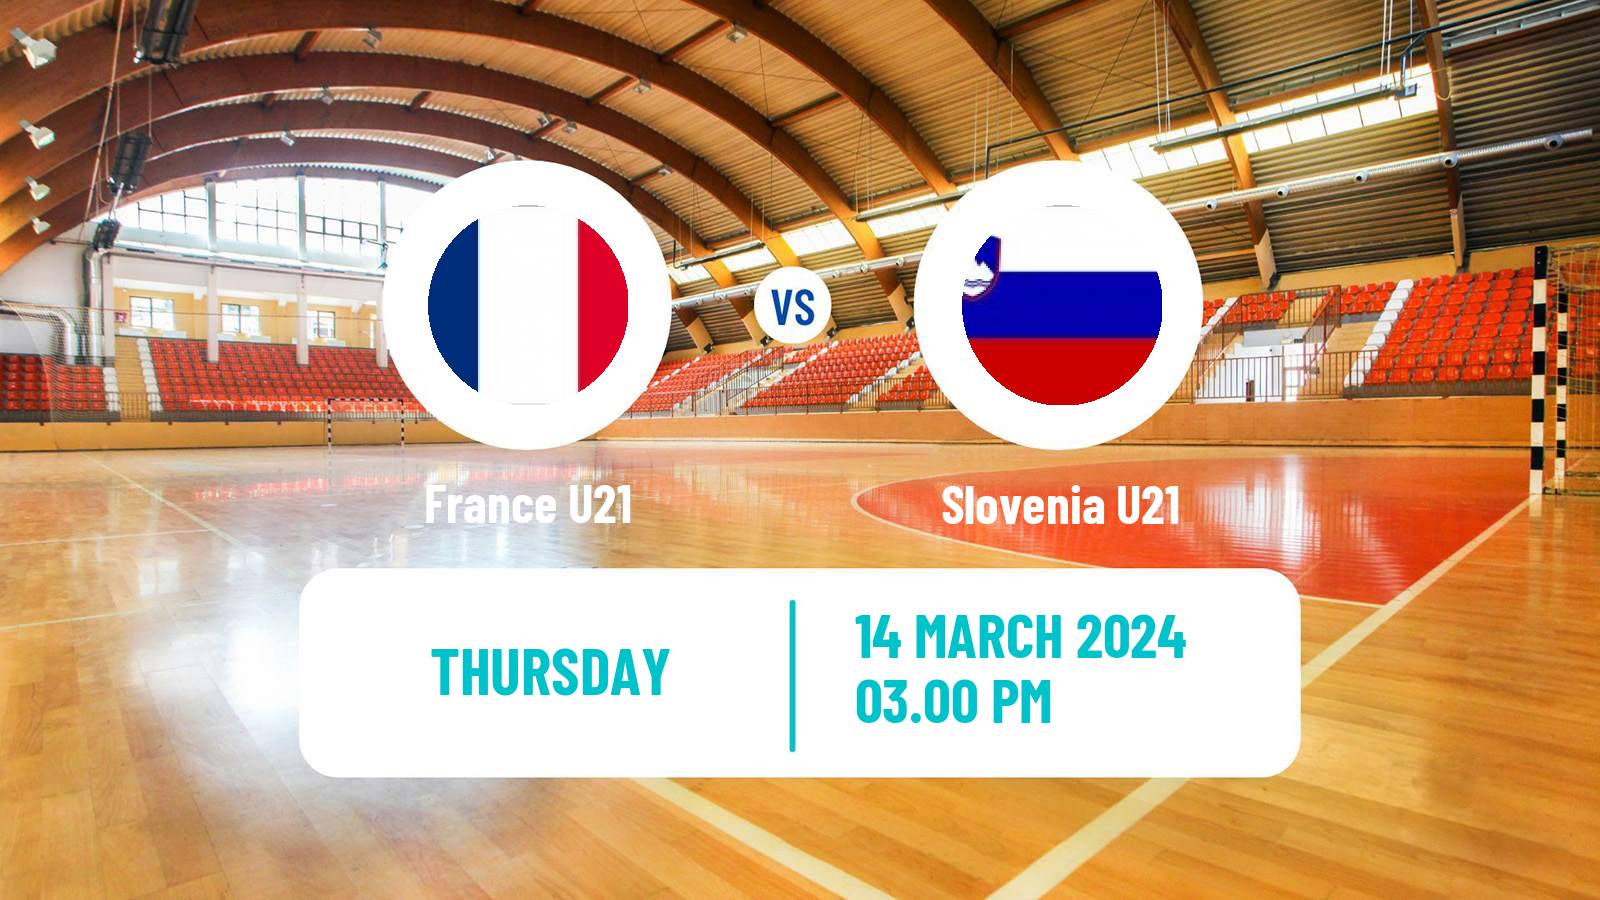 Handball Friendly International Handball France U21 - Slovenia U21